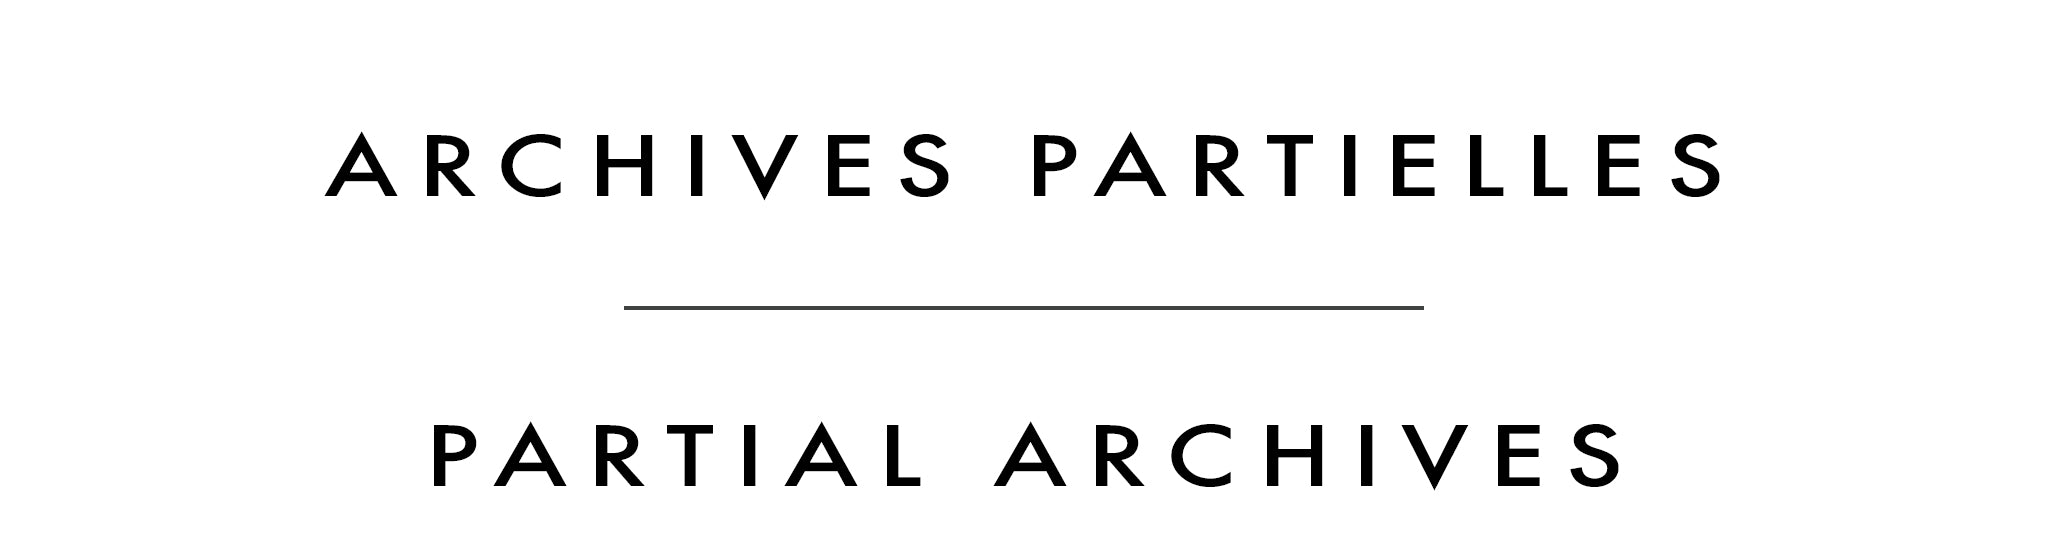 Archives partielles | Partial Archives | Blythe Scott